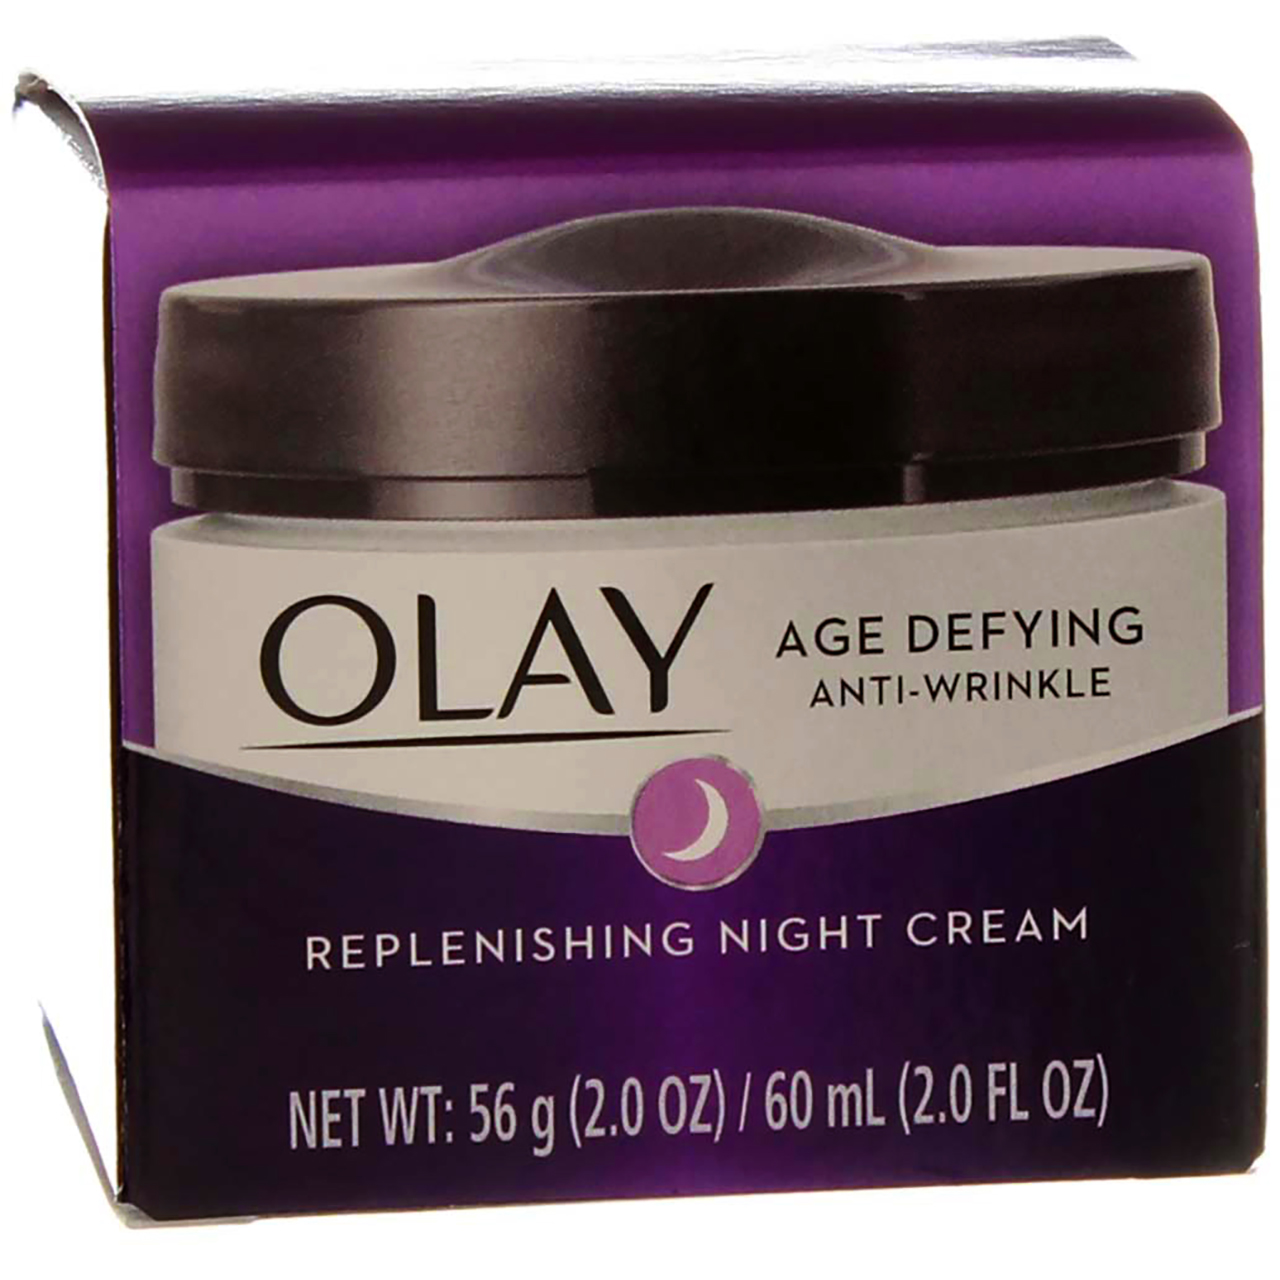 Olay Age Defying Anti-Wrinkle Replenishing Night Cream, 2 oz (Pack of 6) - image 3 of 5